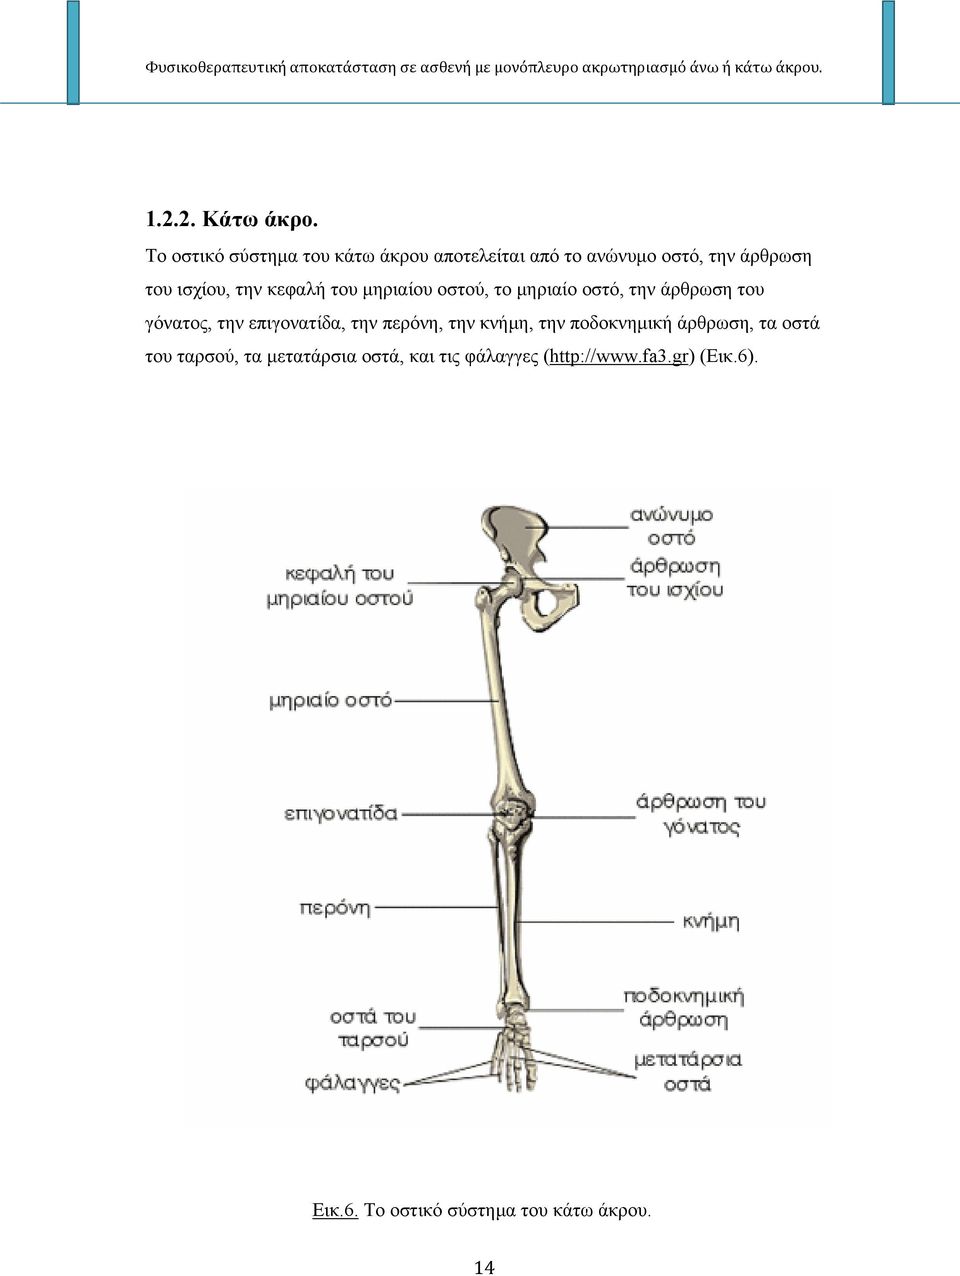 κεφαλή του μηριαίου οστού, το μηριαίο οστό, την άρθρωση του γόνατος, την επιγονατίδα, την